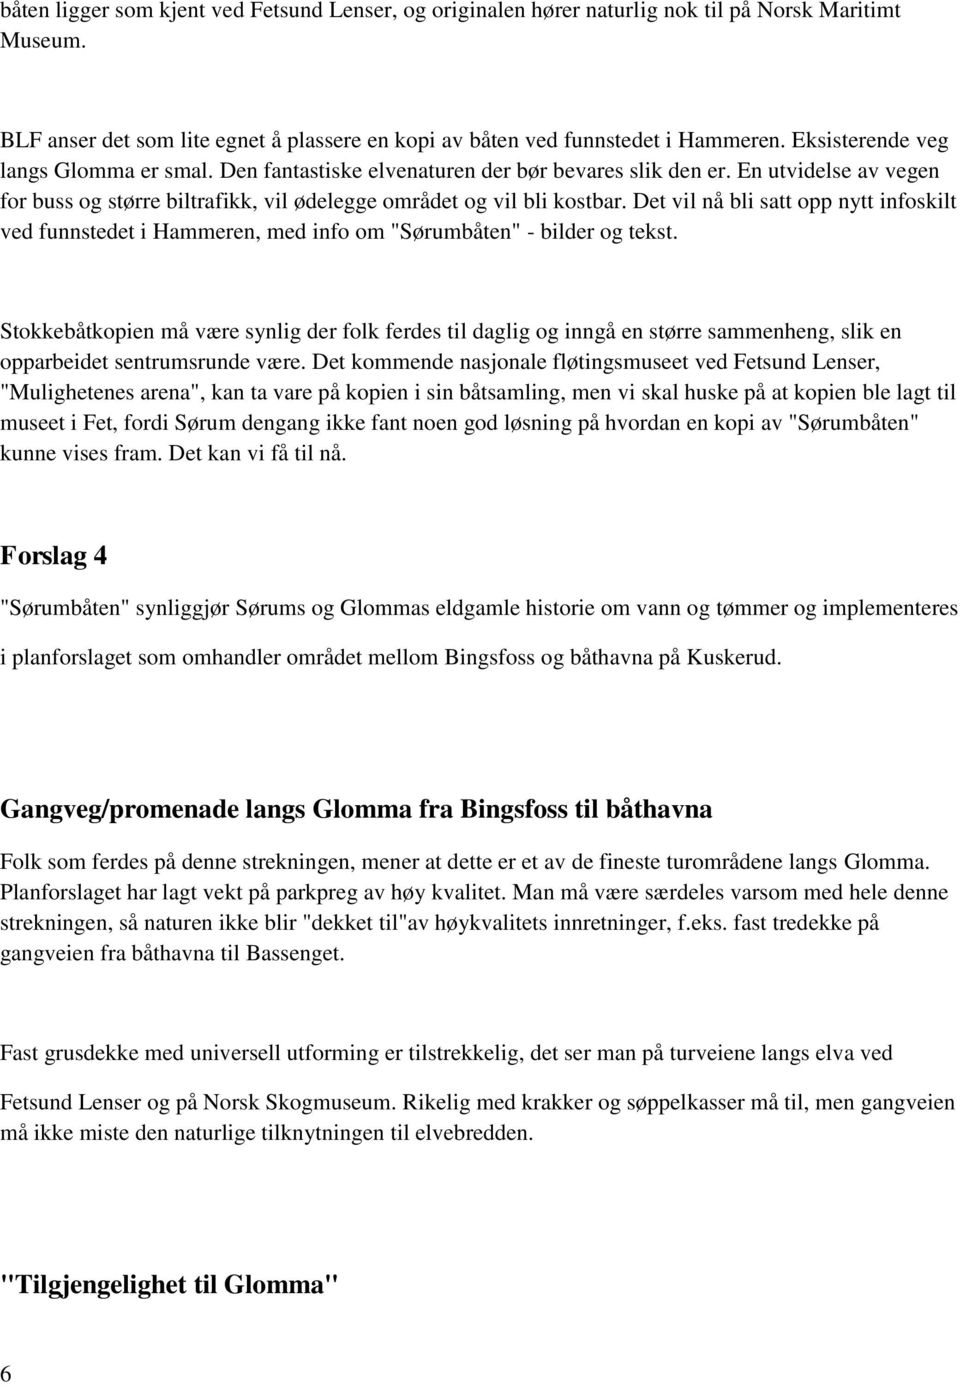 Det vil nå bli satt opp nytt infoskilt ved funnstedet i Hammeren, med info om "Sørumbåten" - bilder og tekst.